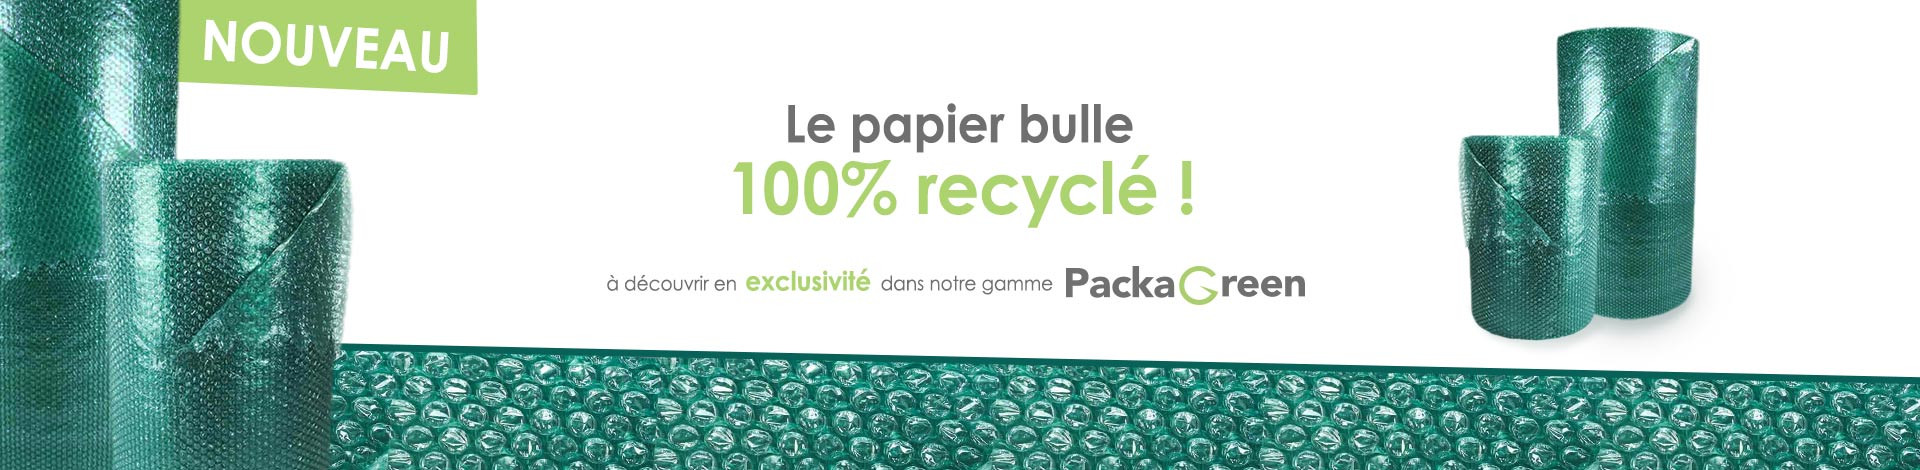 Papier bulle recyclé